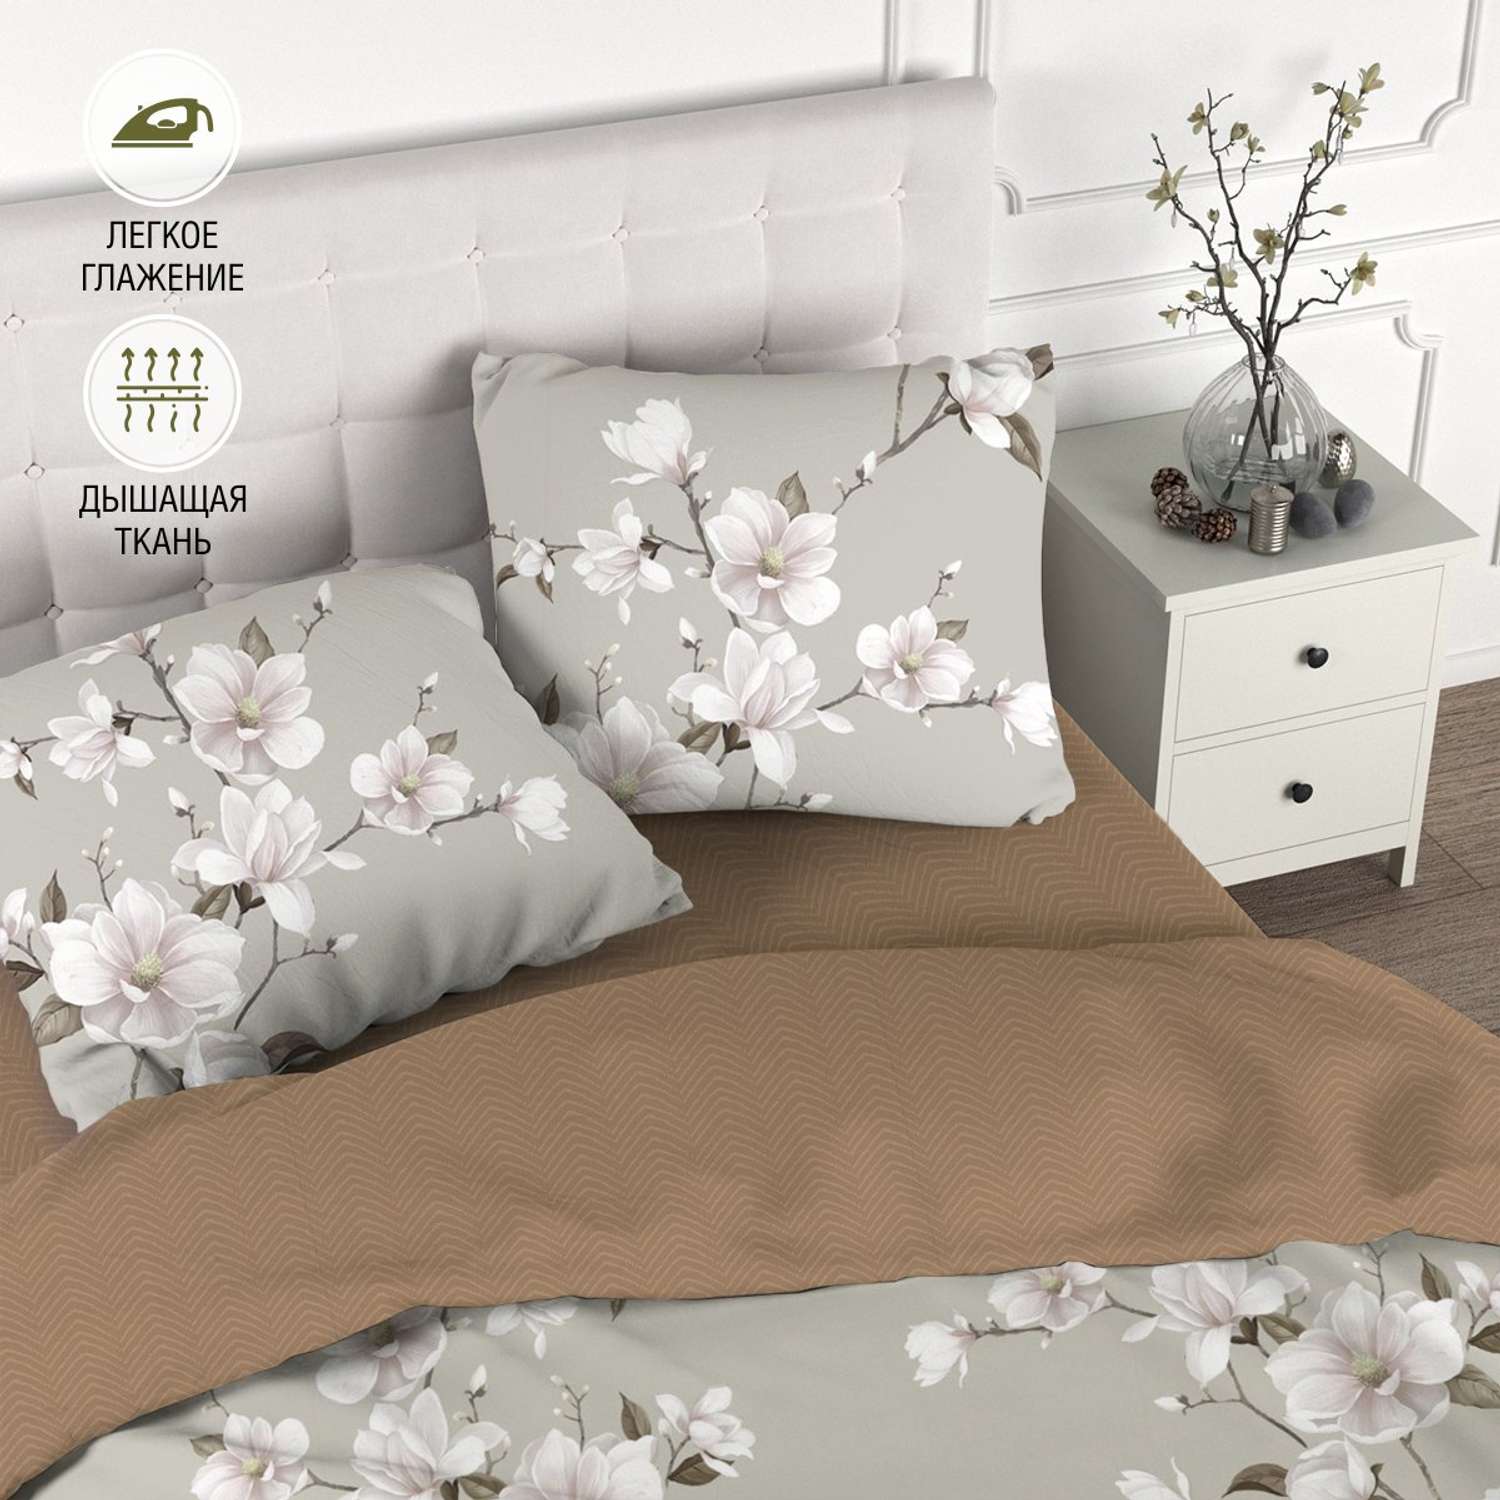 Комплект постельного белья для SNOFF Канела семейный сатин рис.6084-1+6084а-1 - фото 1